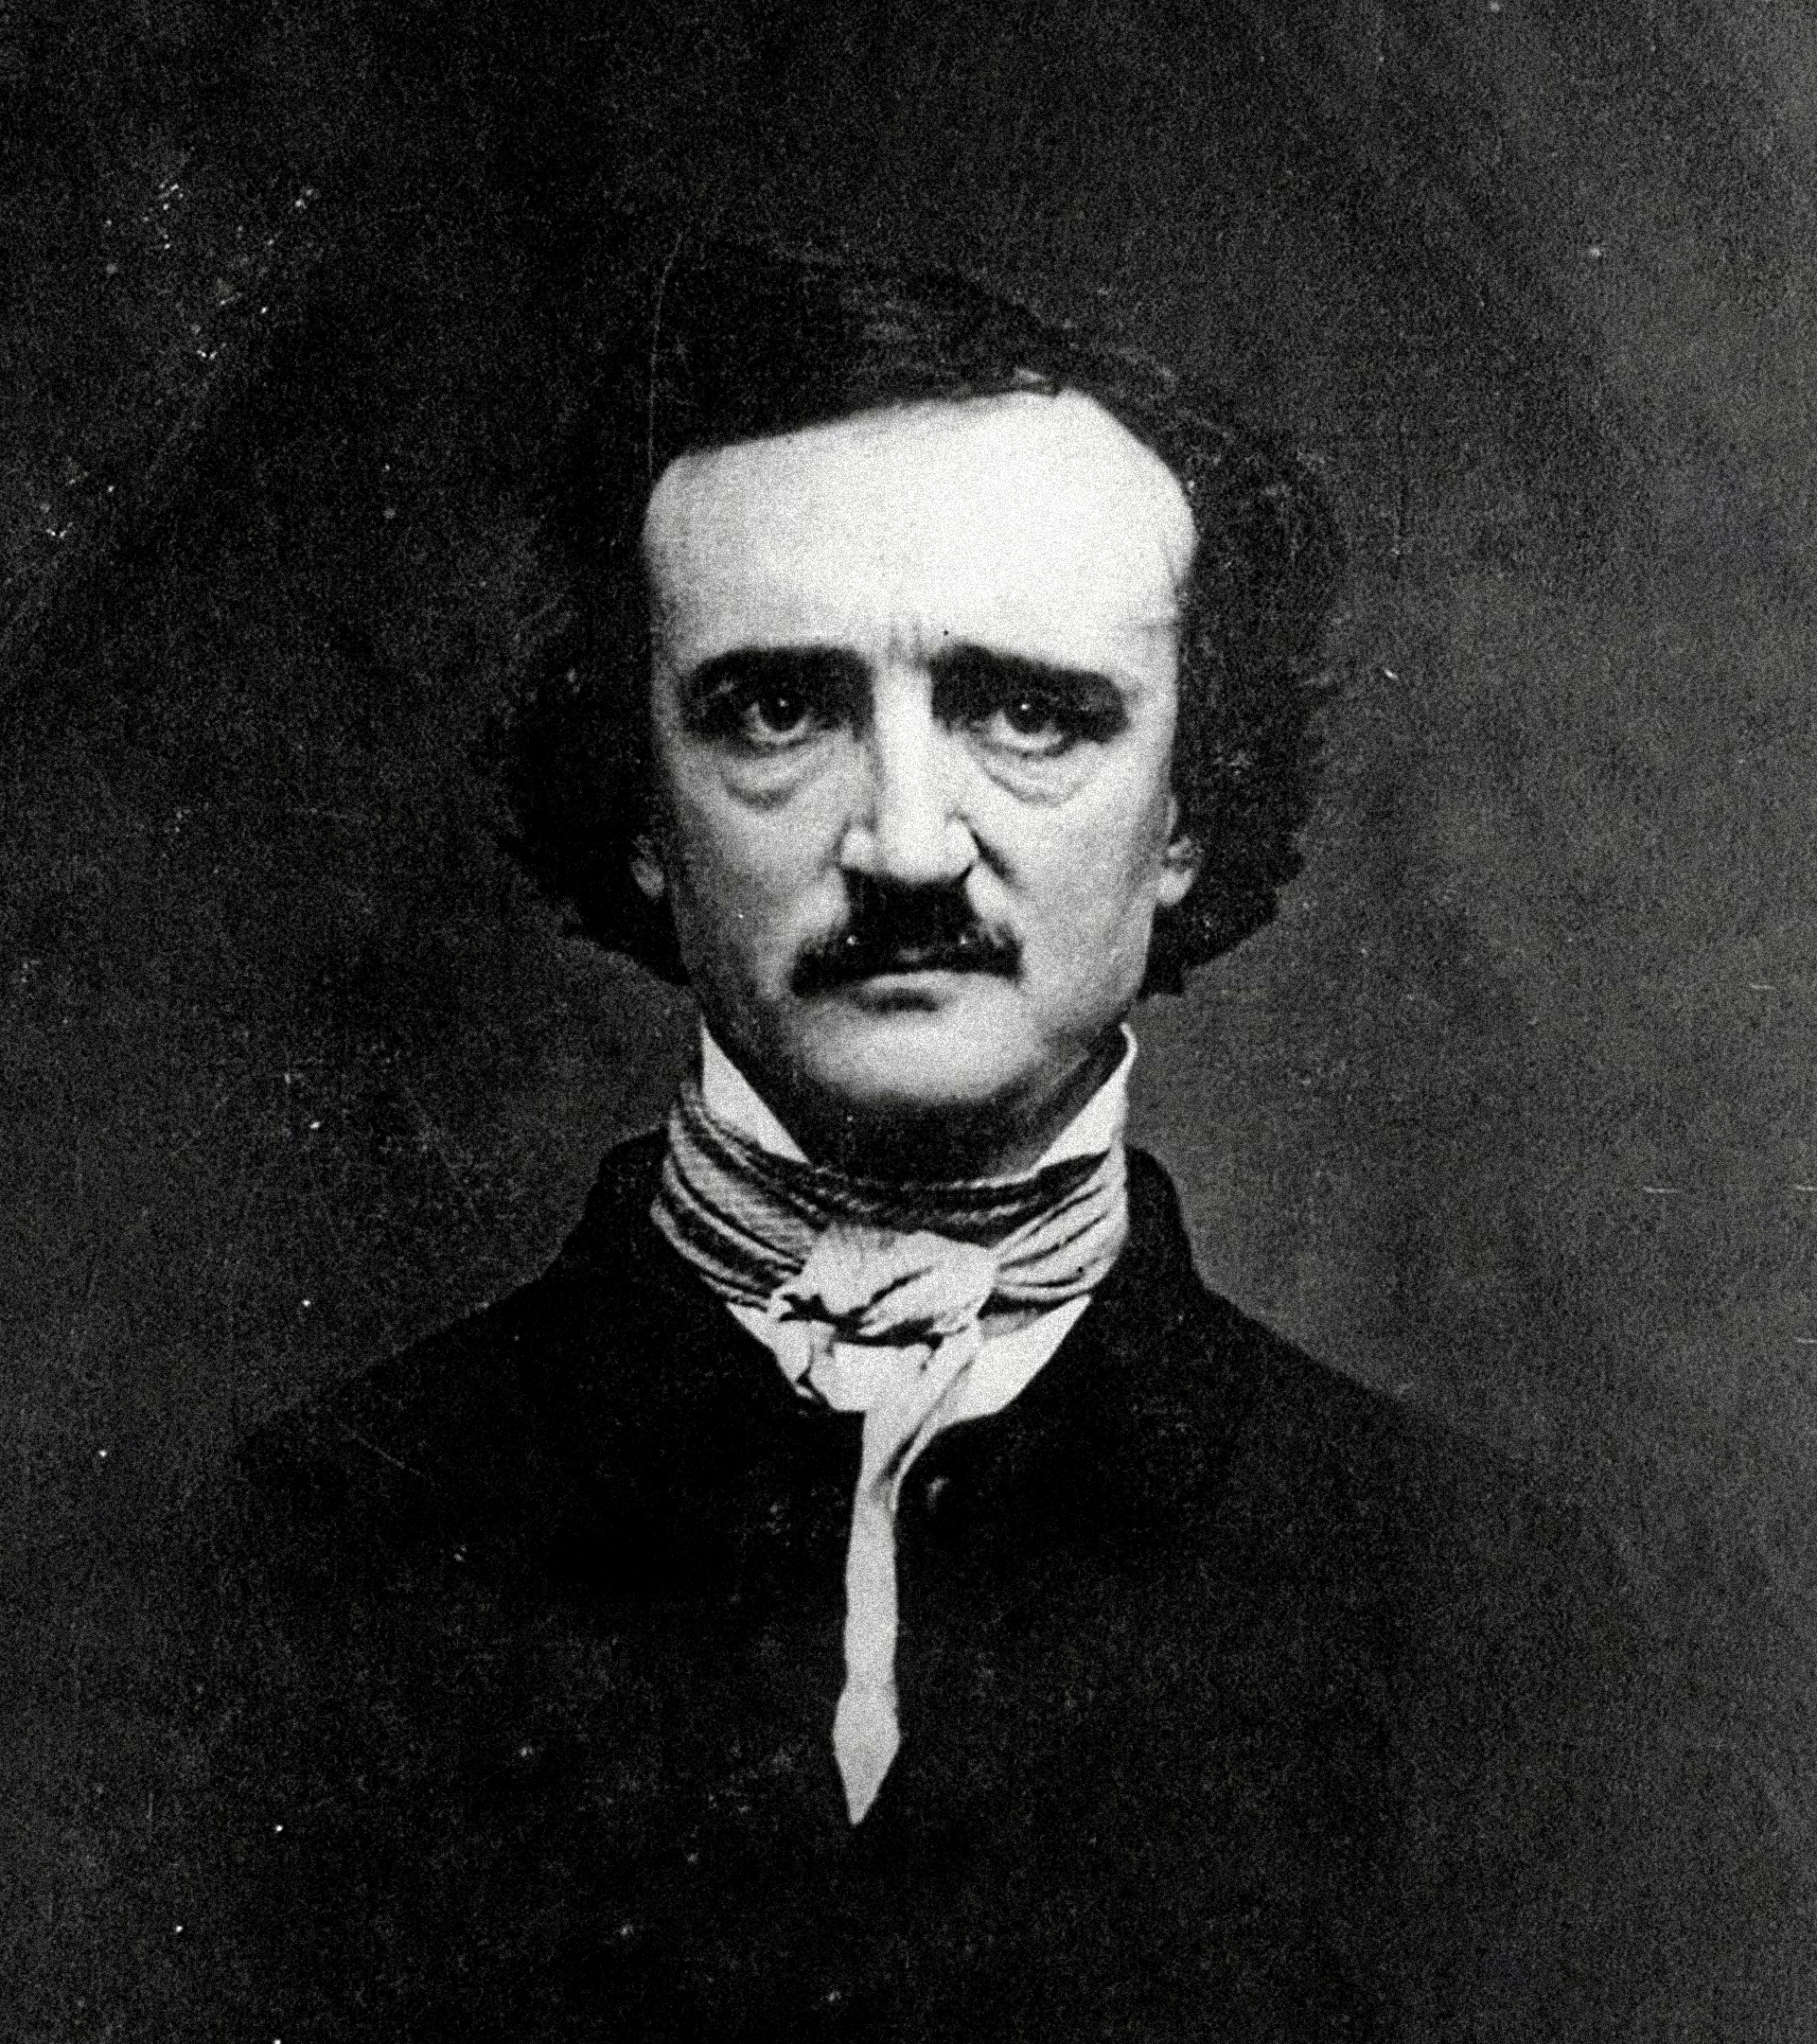 Retrato de Poe tomado en 1849 en Lowell por un fotógrafo desconocido.